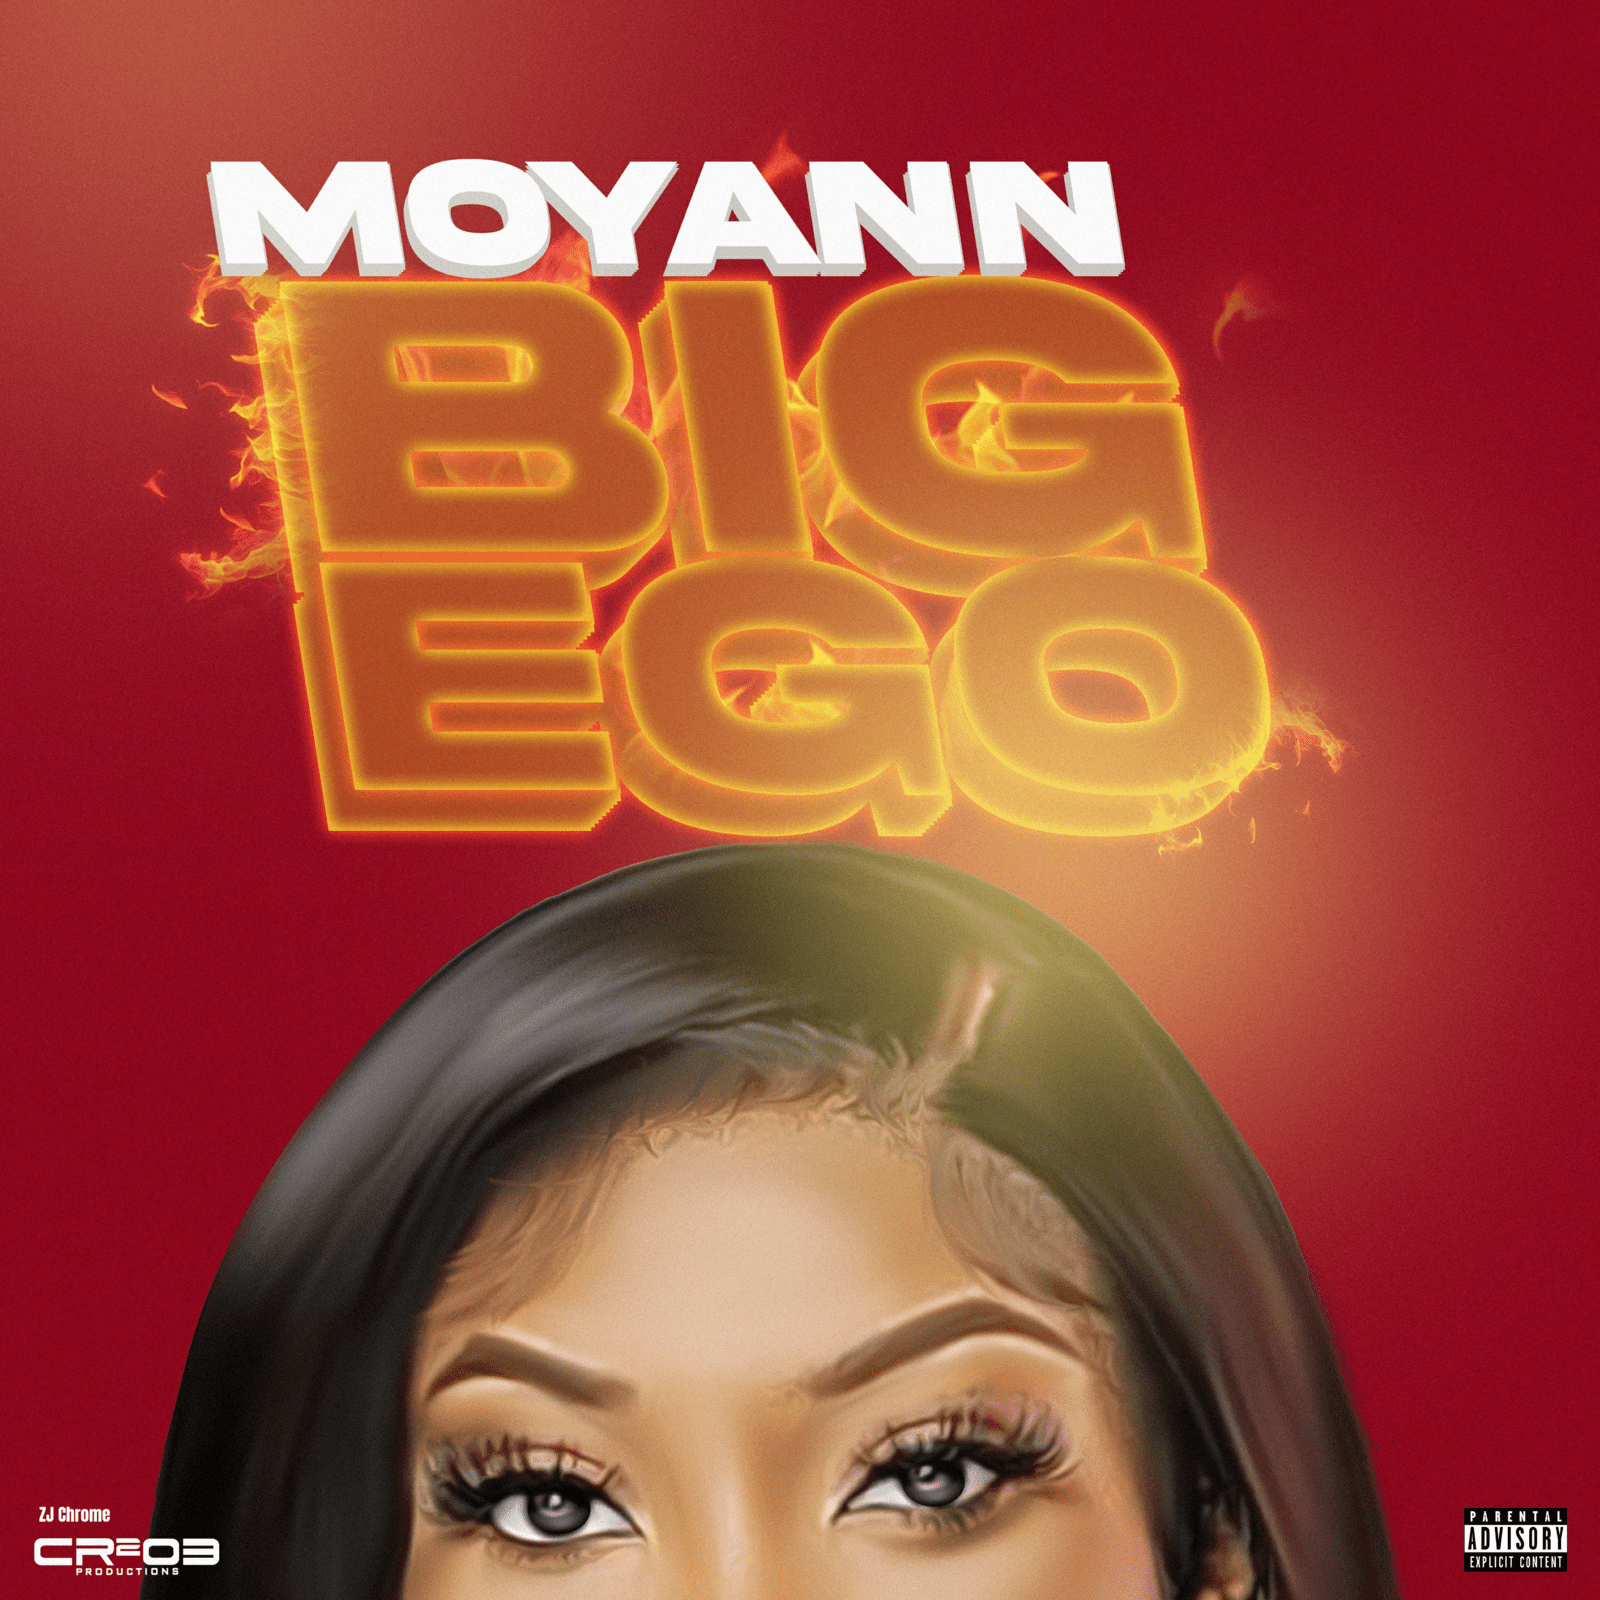 Moyann X ZJ Chrome - Big Ego